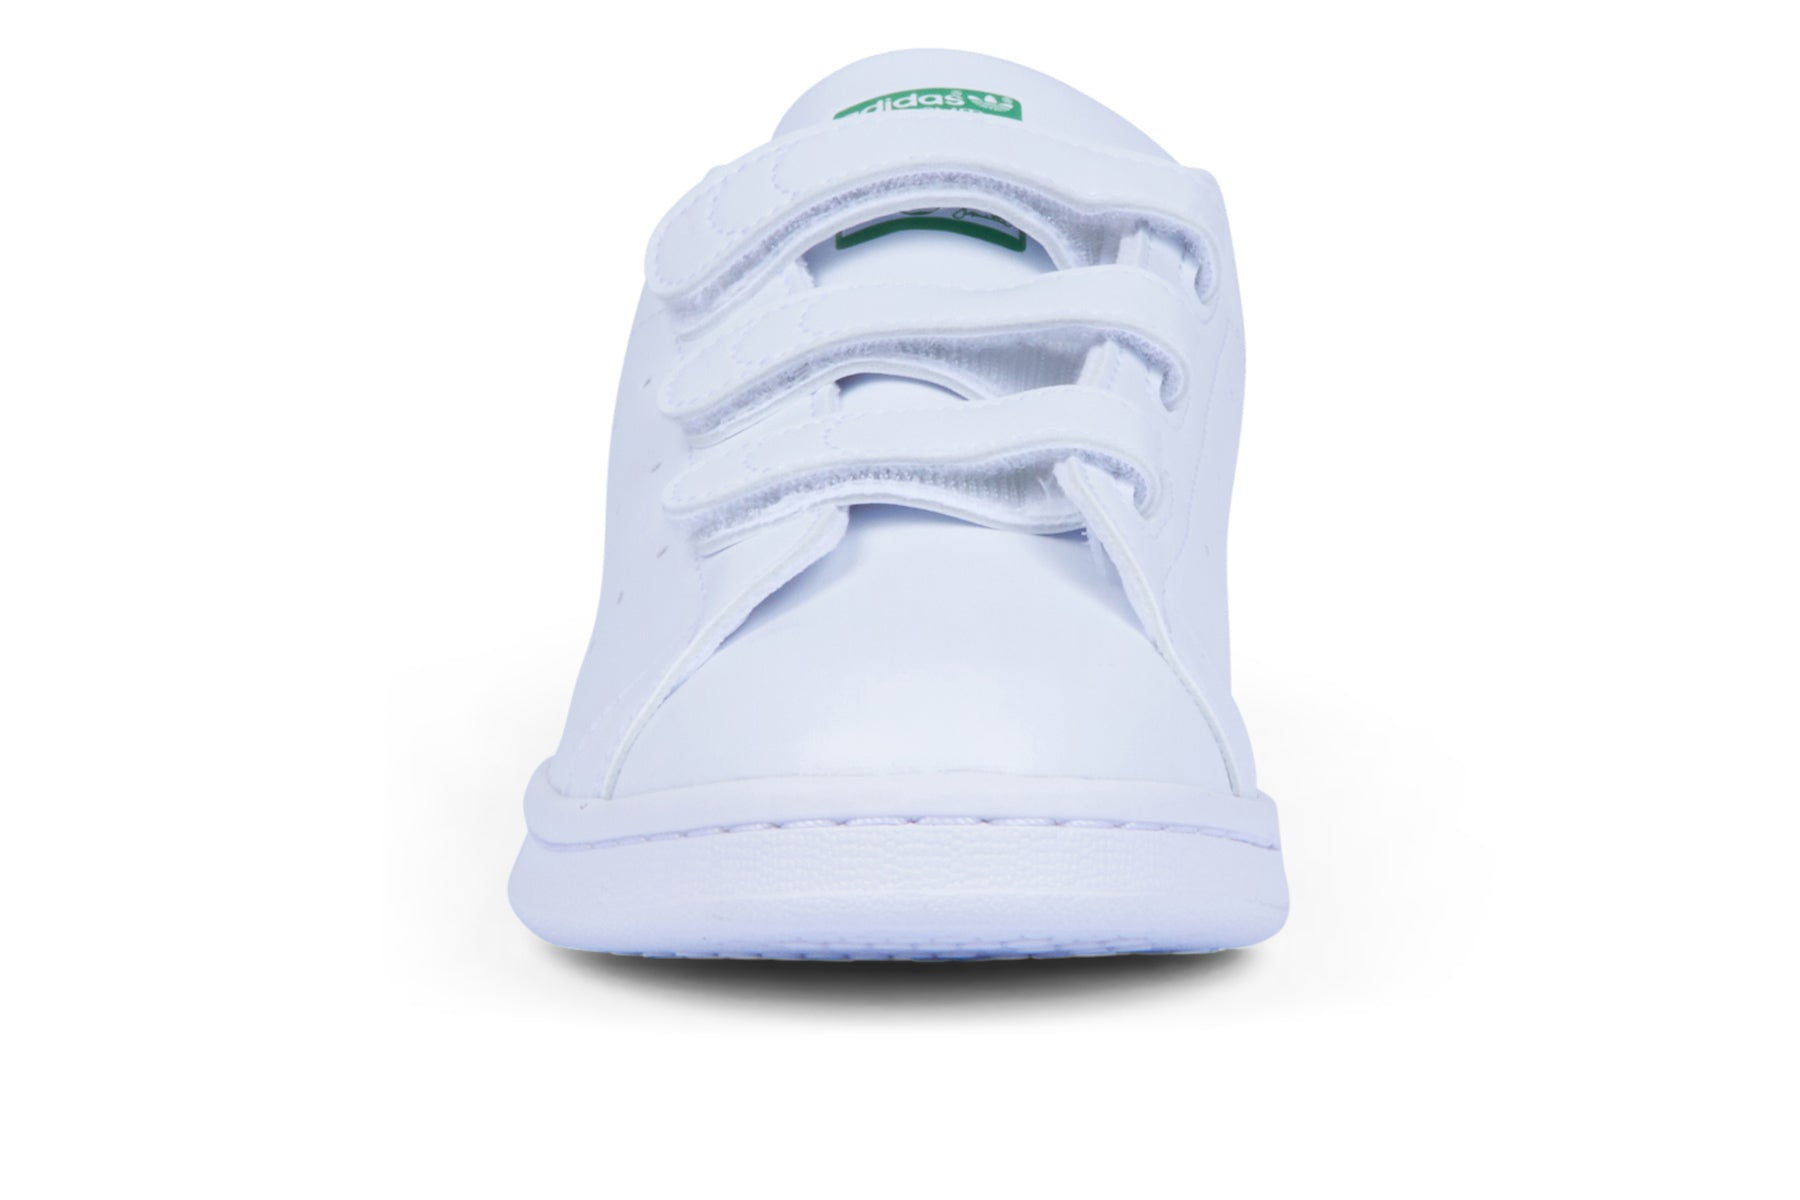 Adidas Stan Smith CF - FTWR White/FTWR White/Green